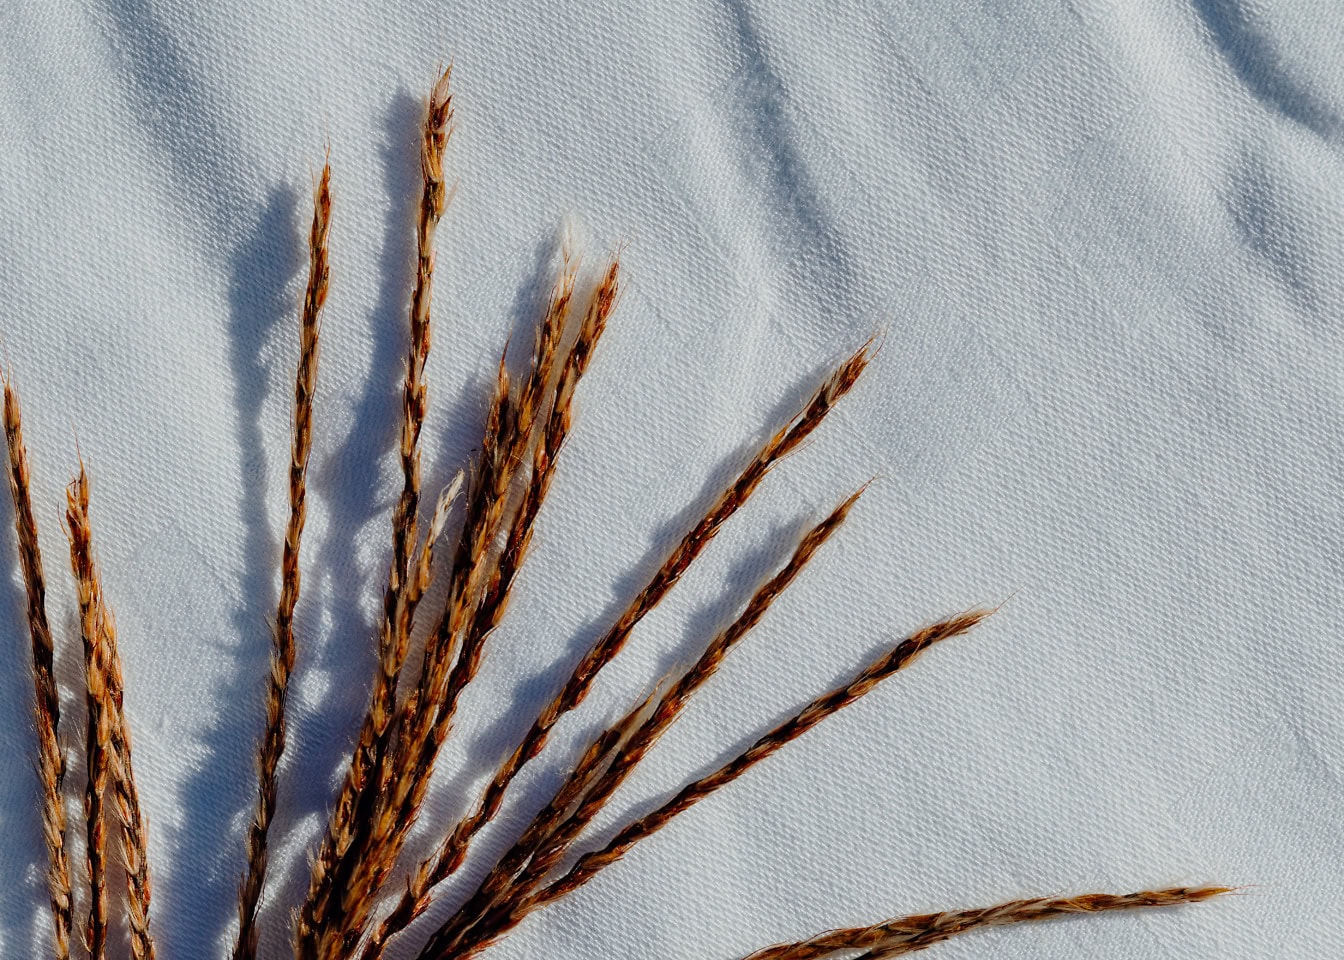 Gäng brunt torrt gräs på en vit bomullsduk